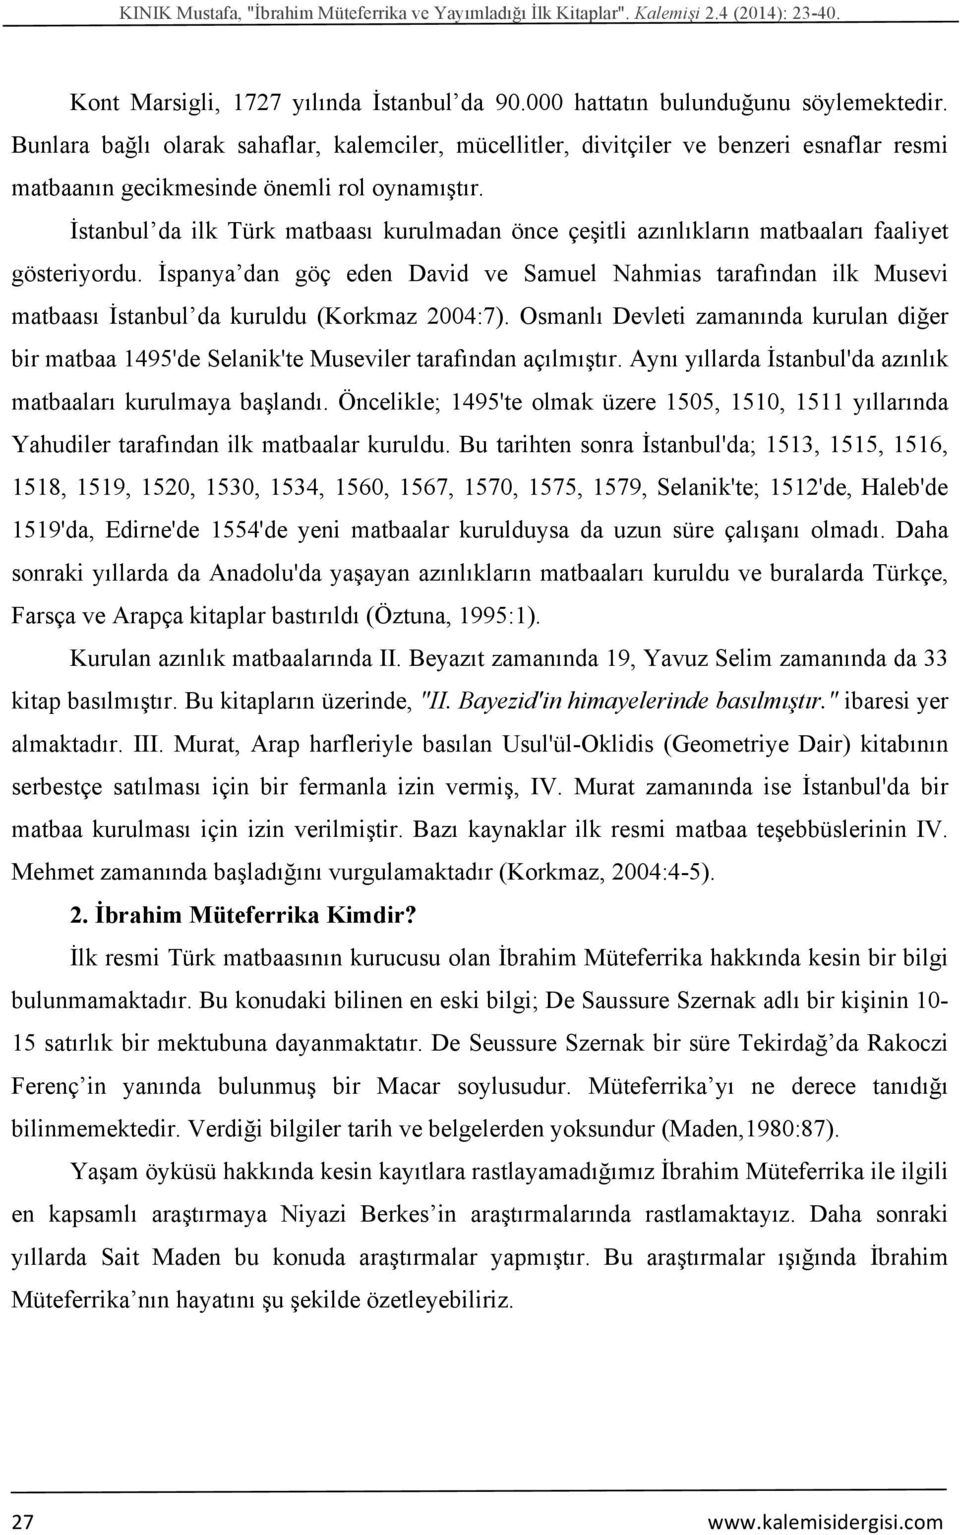 İstanbul da ilk Türk matbaası kurulmadan önce çeşitli azınlıkların matbaaları faaliyet gösteriyordu.